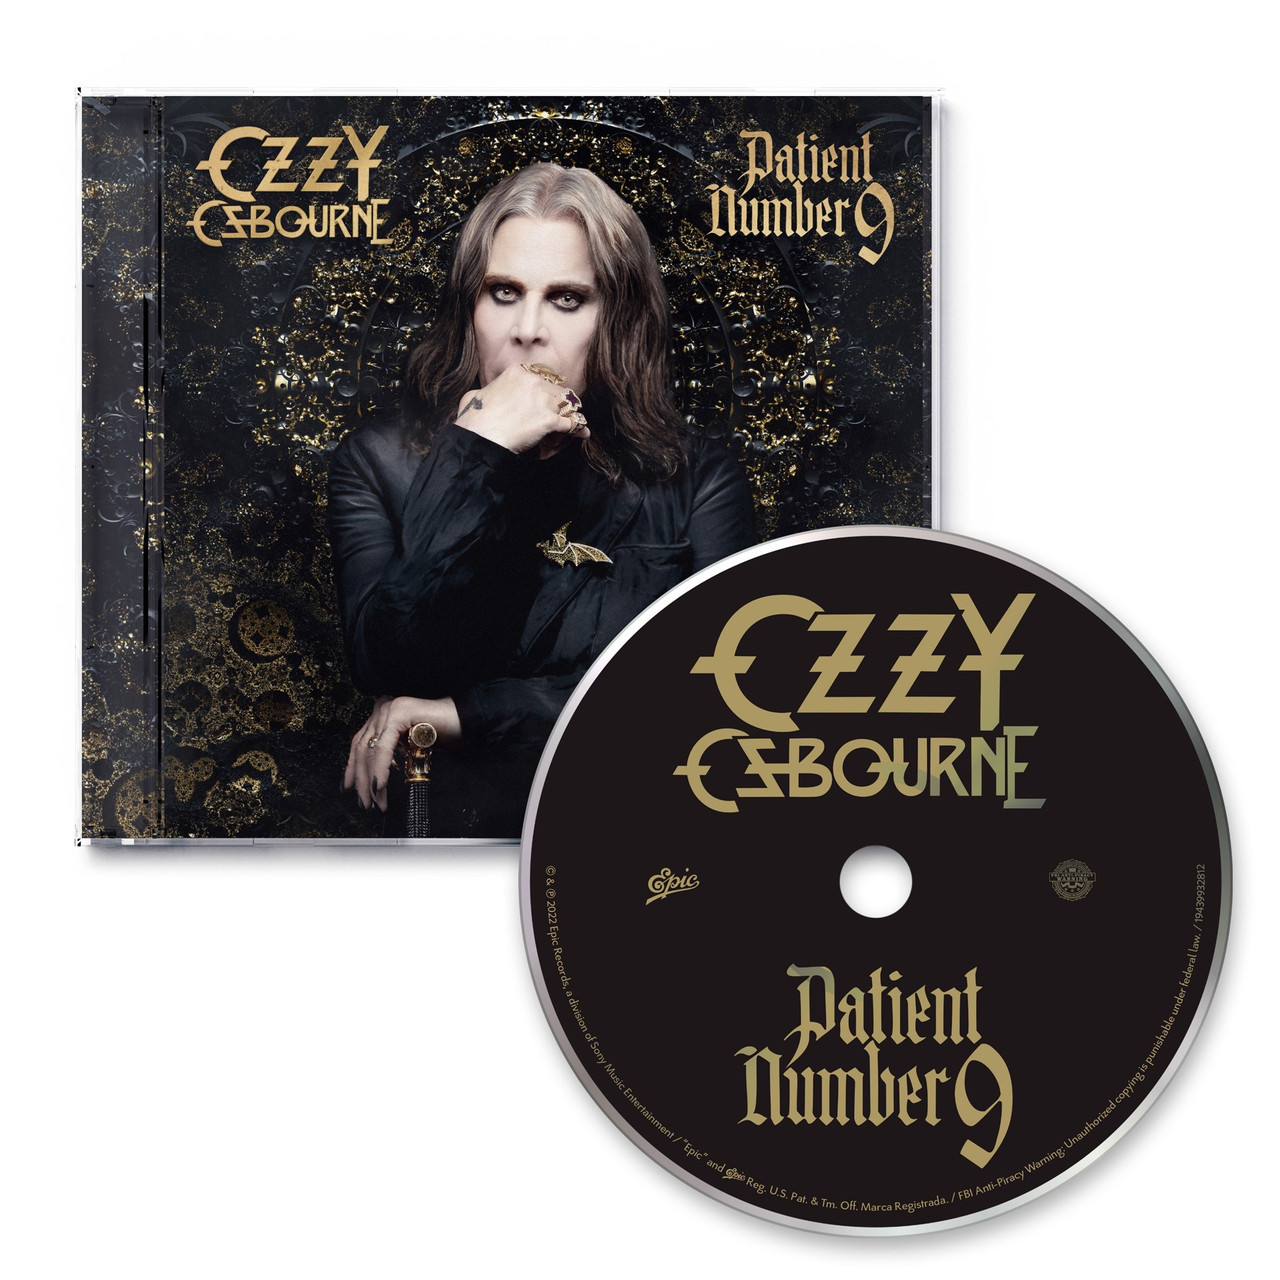 Ozzy Osbourne 'Patient Number 9' CD + Exclusive Comic Book